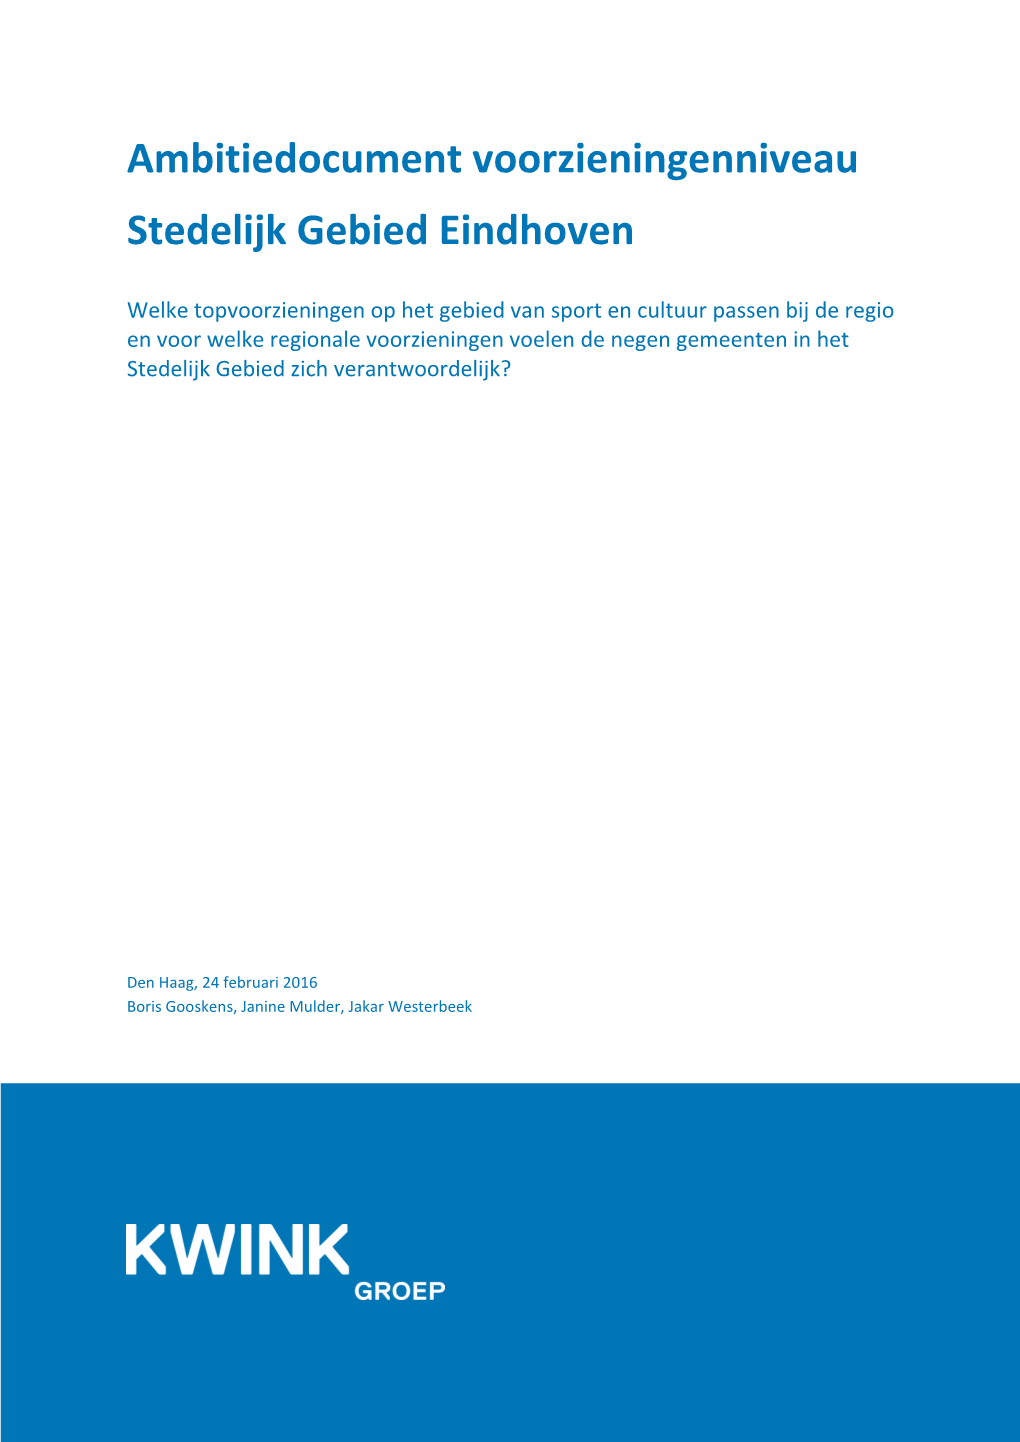 Ambitiedocument Voorzieningenniveau Stedelijk Gebied Eindhoven